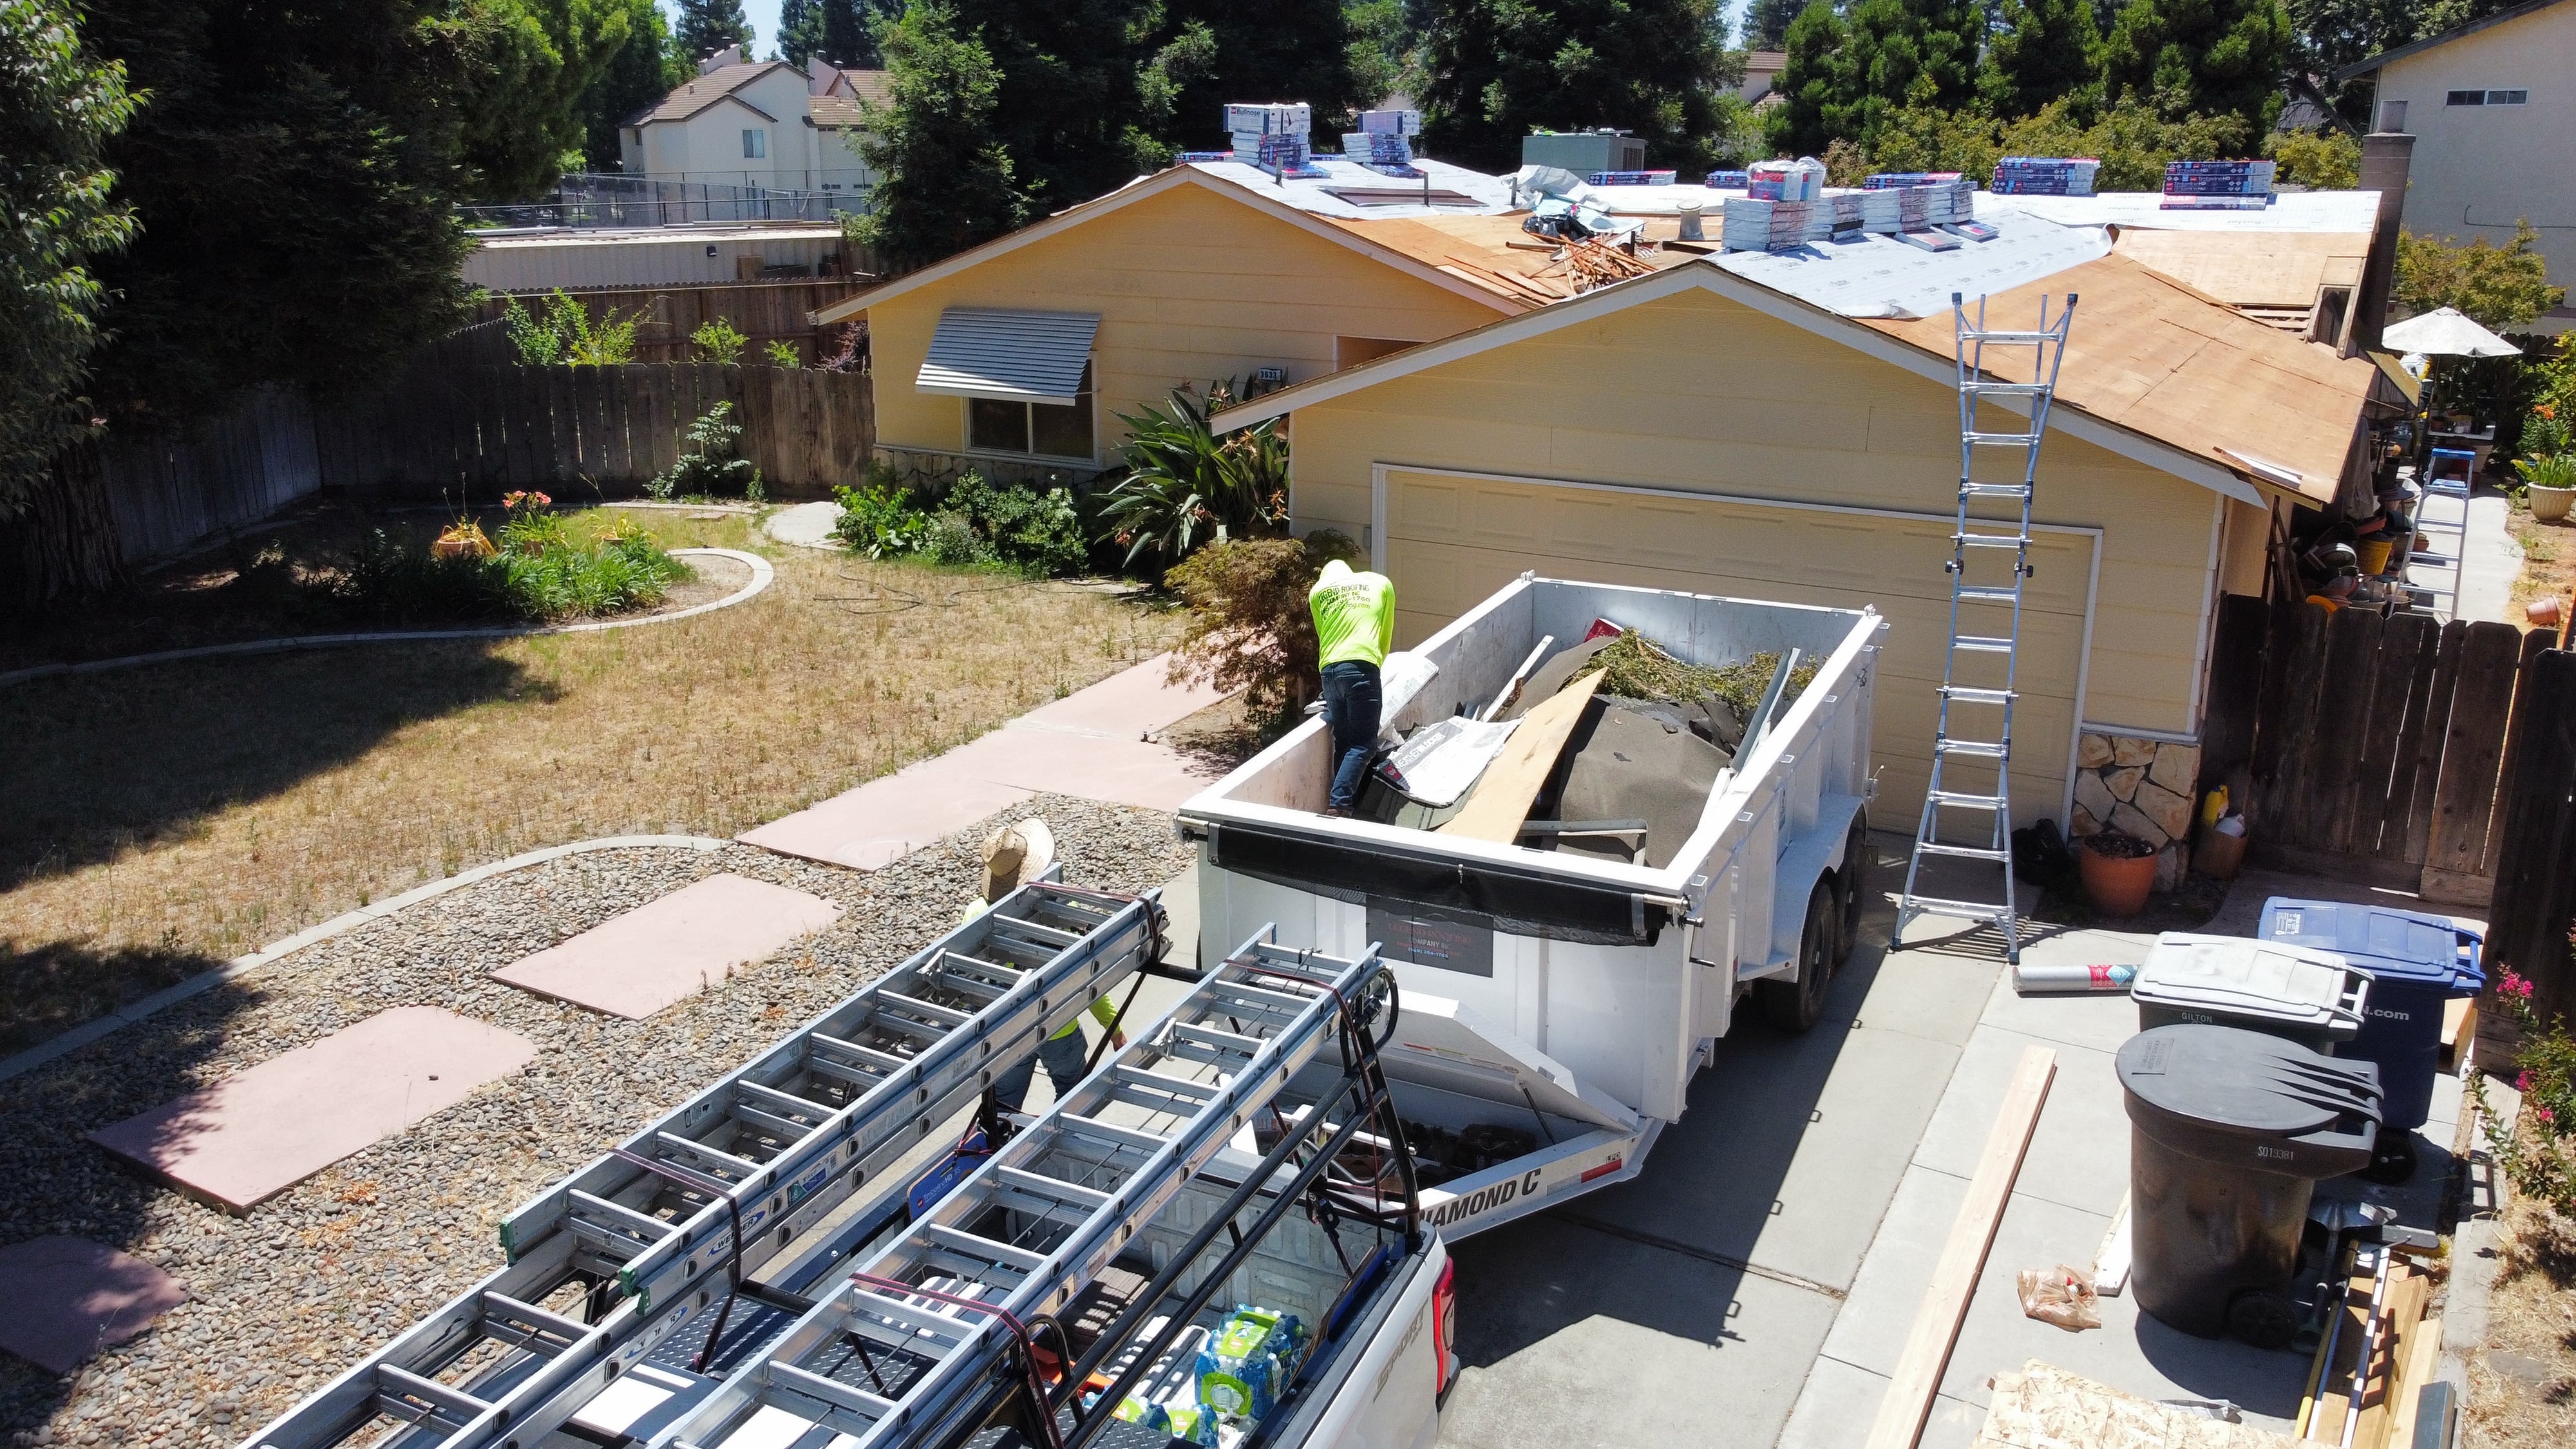 Roofing expert start working on Asphalt Shingles Roof